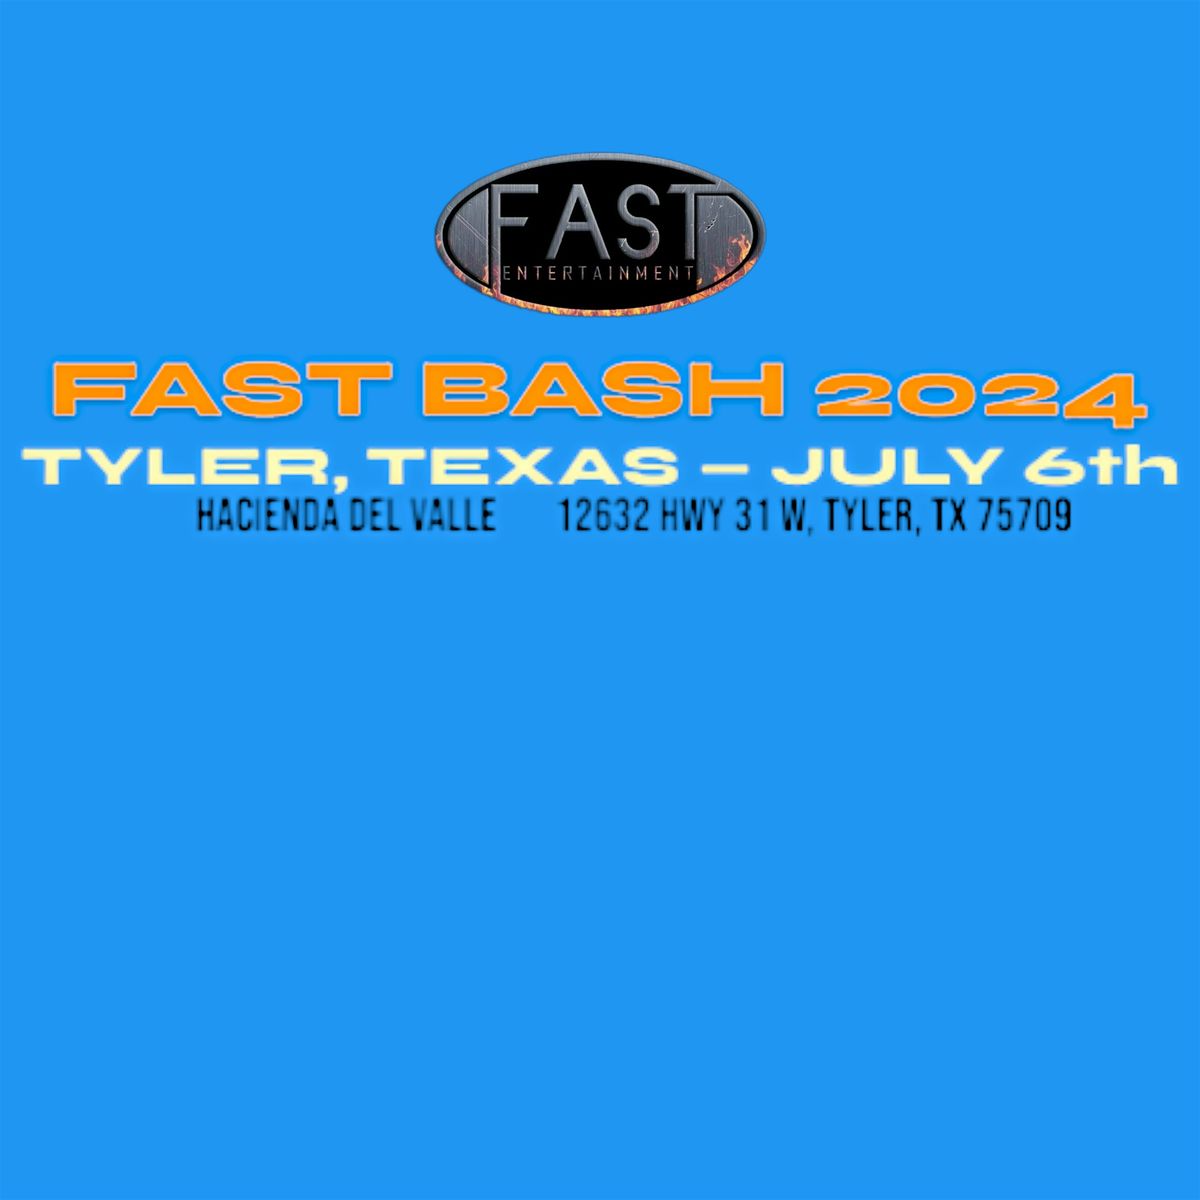 FAST BASH 2024